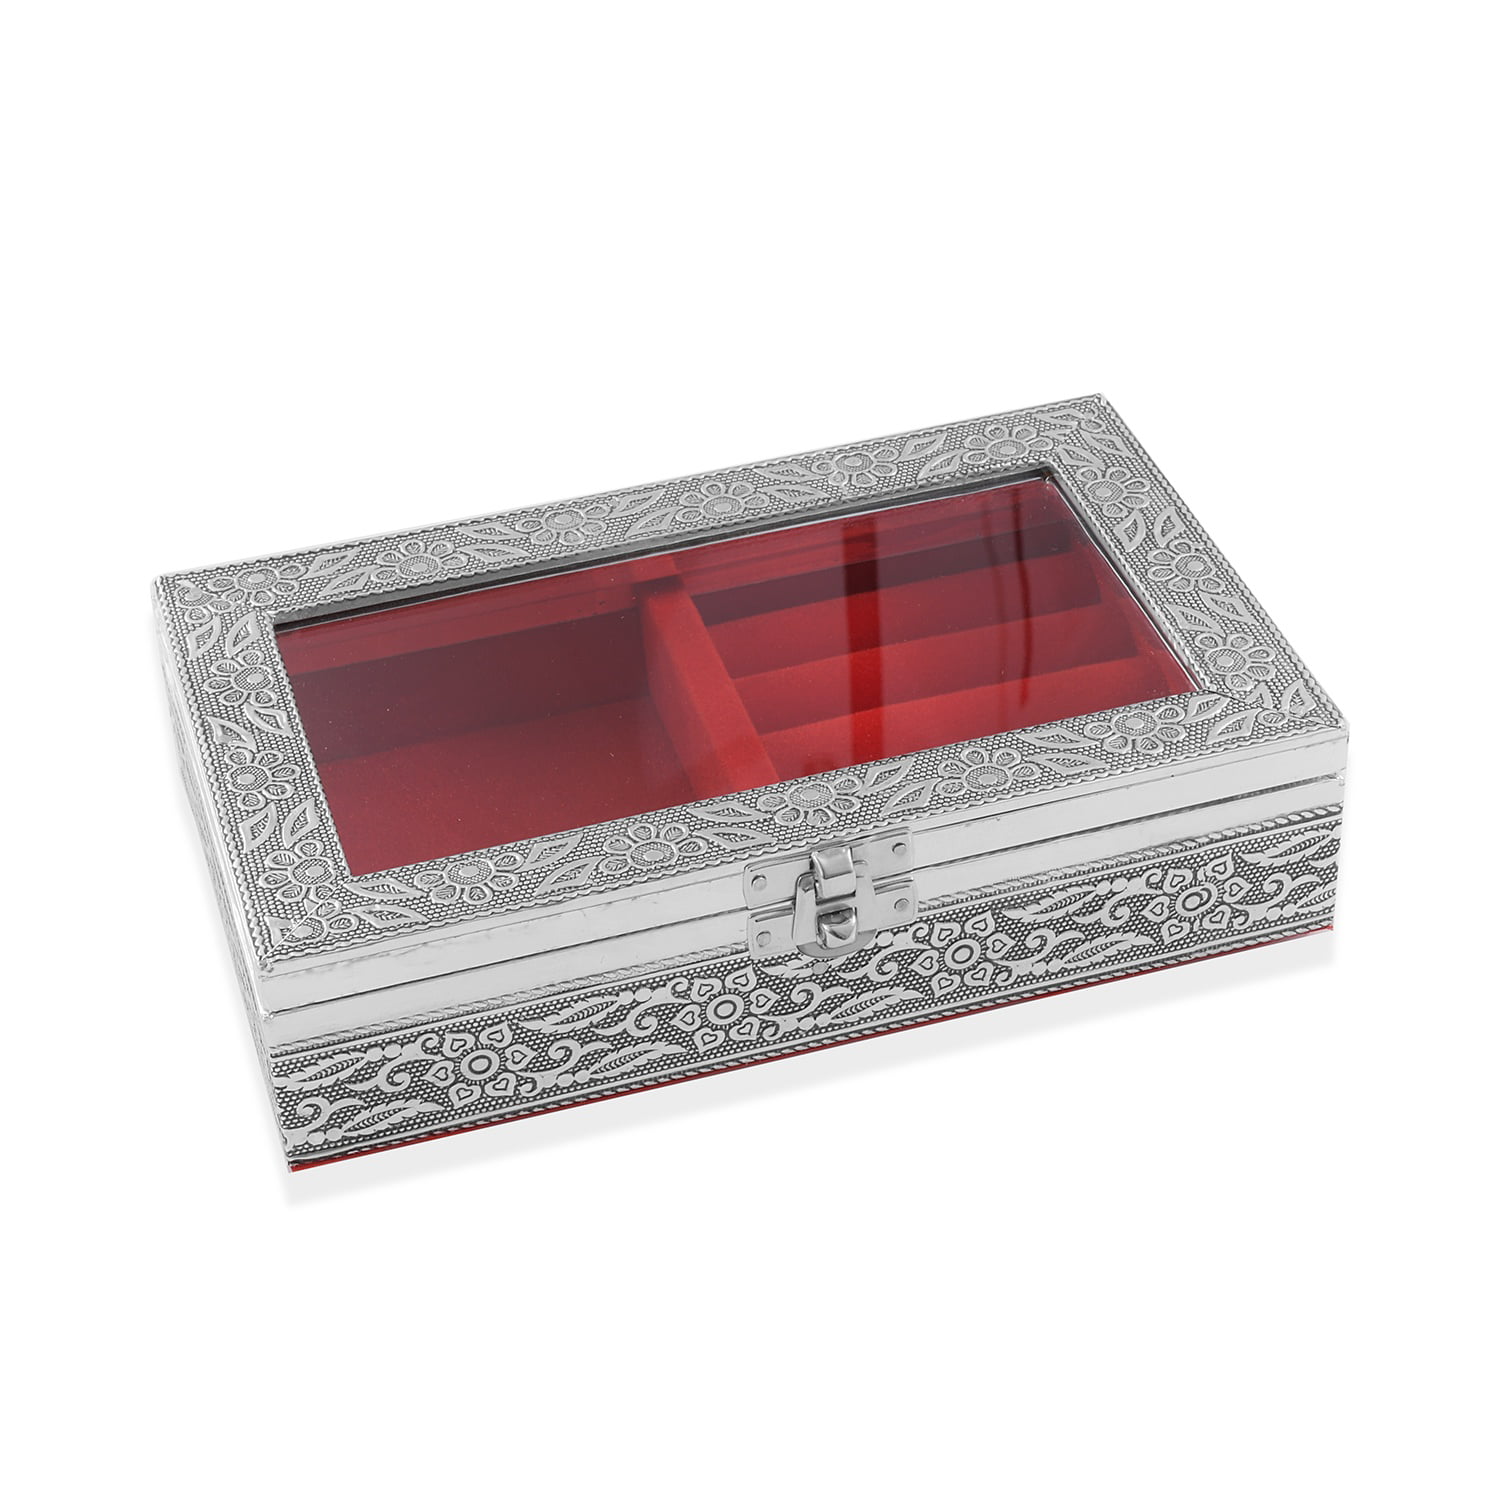 Aluminium Oxidized Jewelry Organizer Box Storage with Wine Scratch Protection 